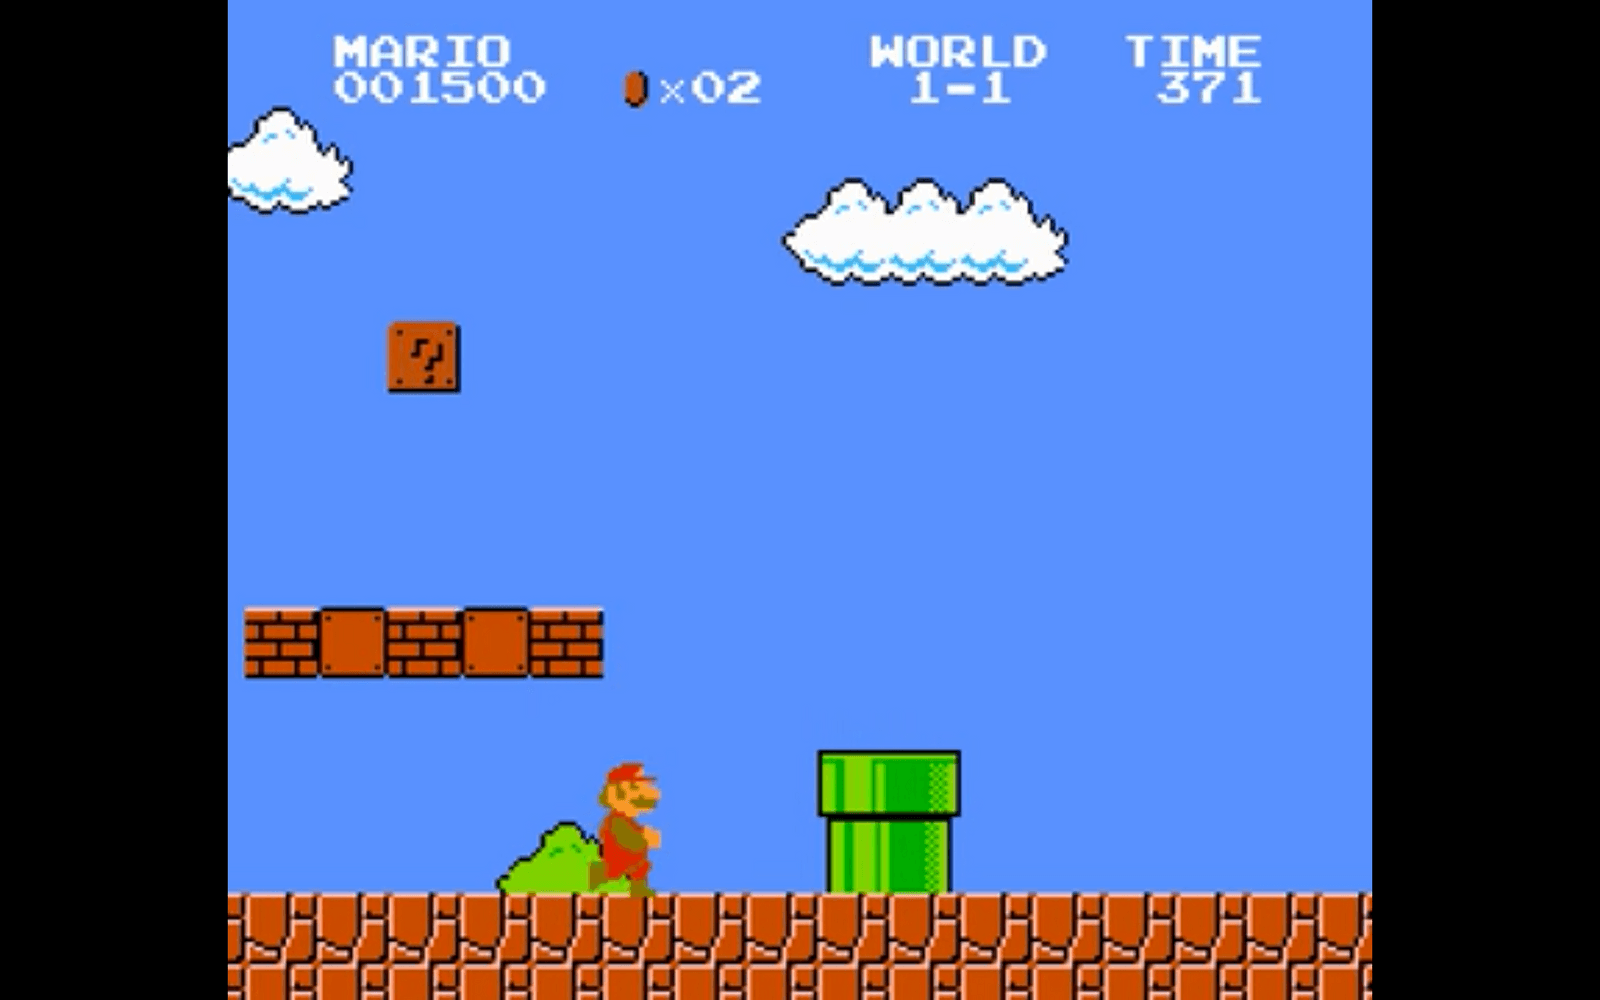 I september 1985 lanserade Nintendo en av spelhistoriens absoluta klassiker. Super Mario Bros. hjälpte inte bara att lyfta NES som spelplattform, många anser att det av egen kraft räddade en famlande spelindustri.